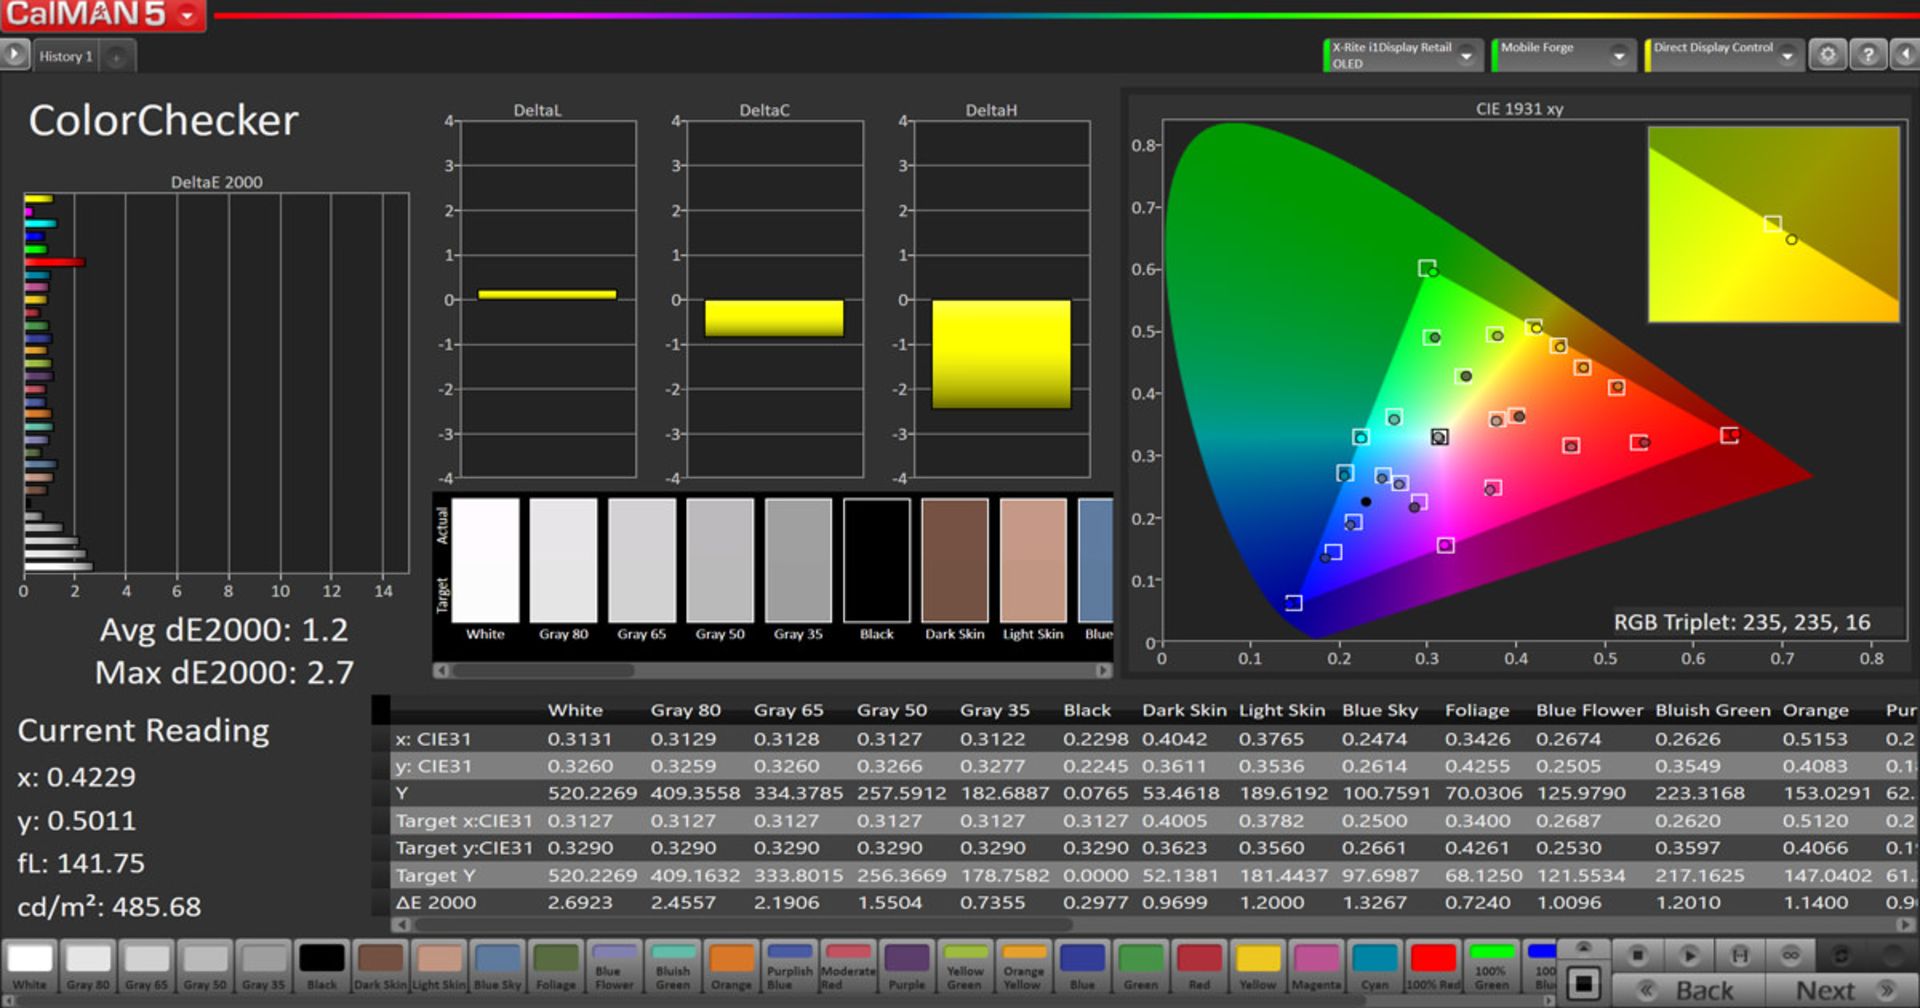 مرجع متخصصين ايران دقت رنگ در فضاي رنگي sRGB در حالت True Tone - آيفون ۱۱ پرو مكس اپل